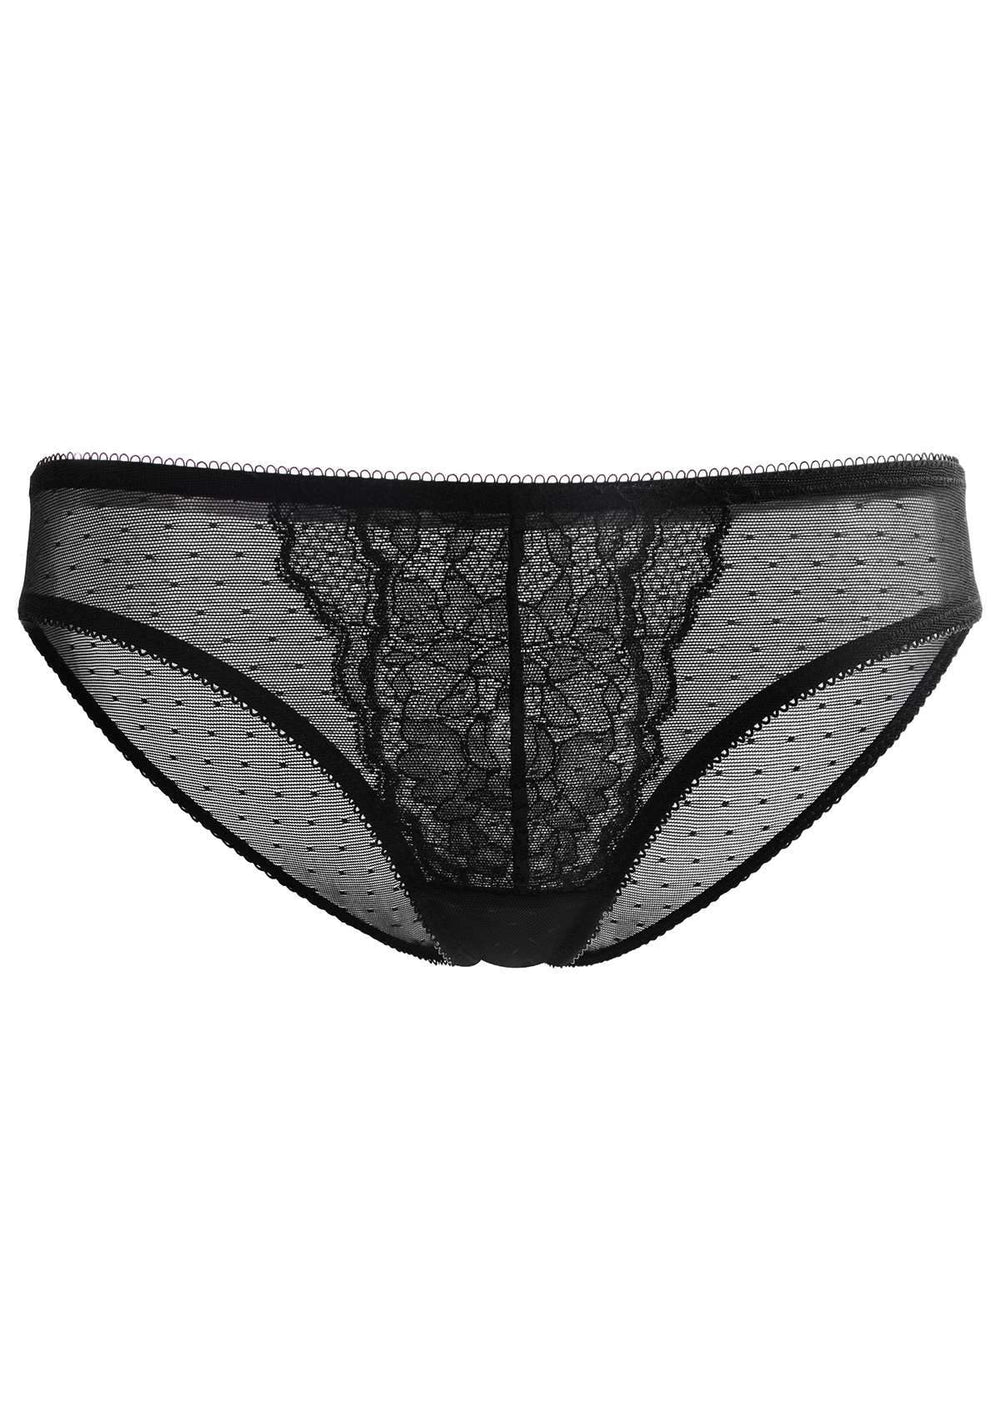 Ladies Sheer Mesh Transparent Net Sexy Knickers Panties Briefs Elasticated  8-12 